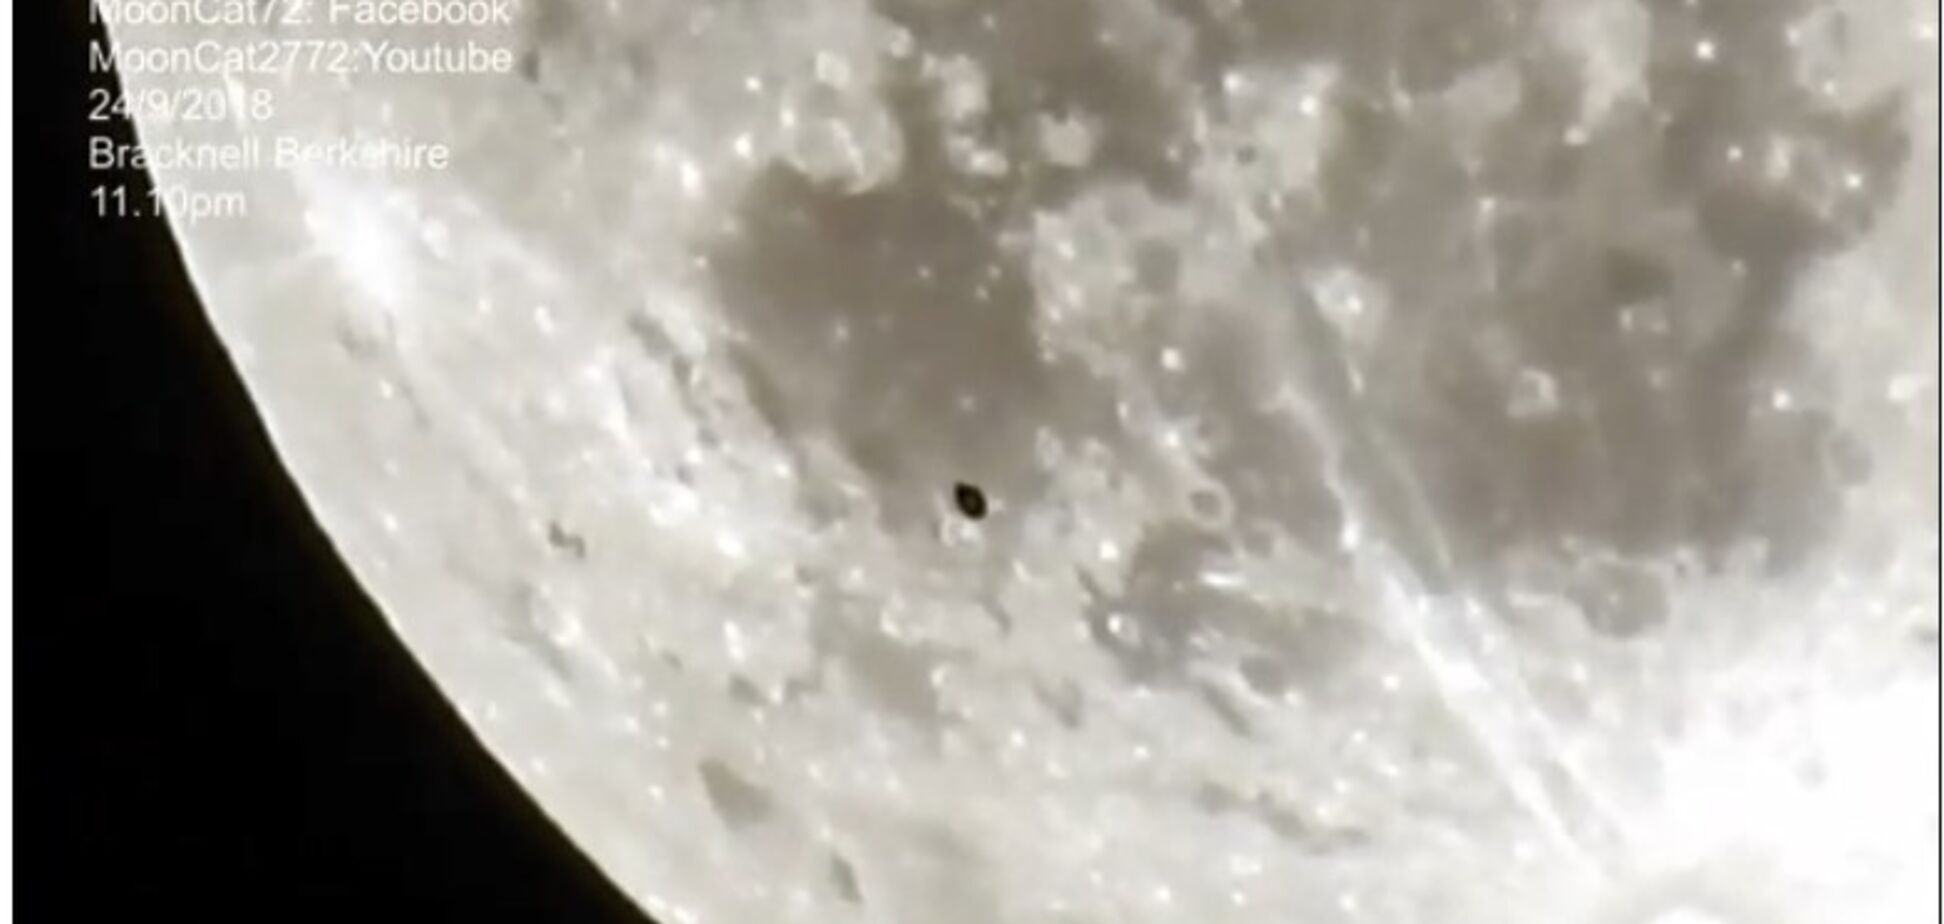 НЛО или инопланетный спутник? Британец снял на видео странный объект в космосе 